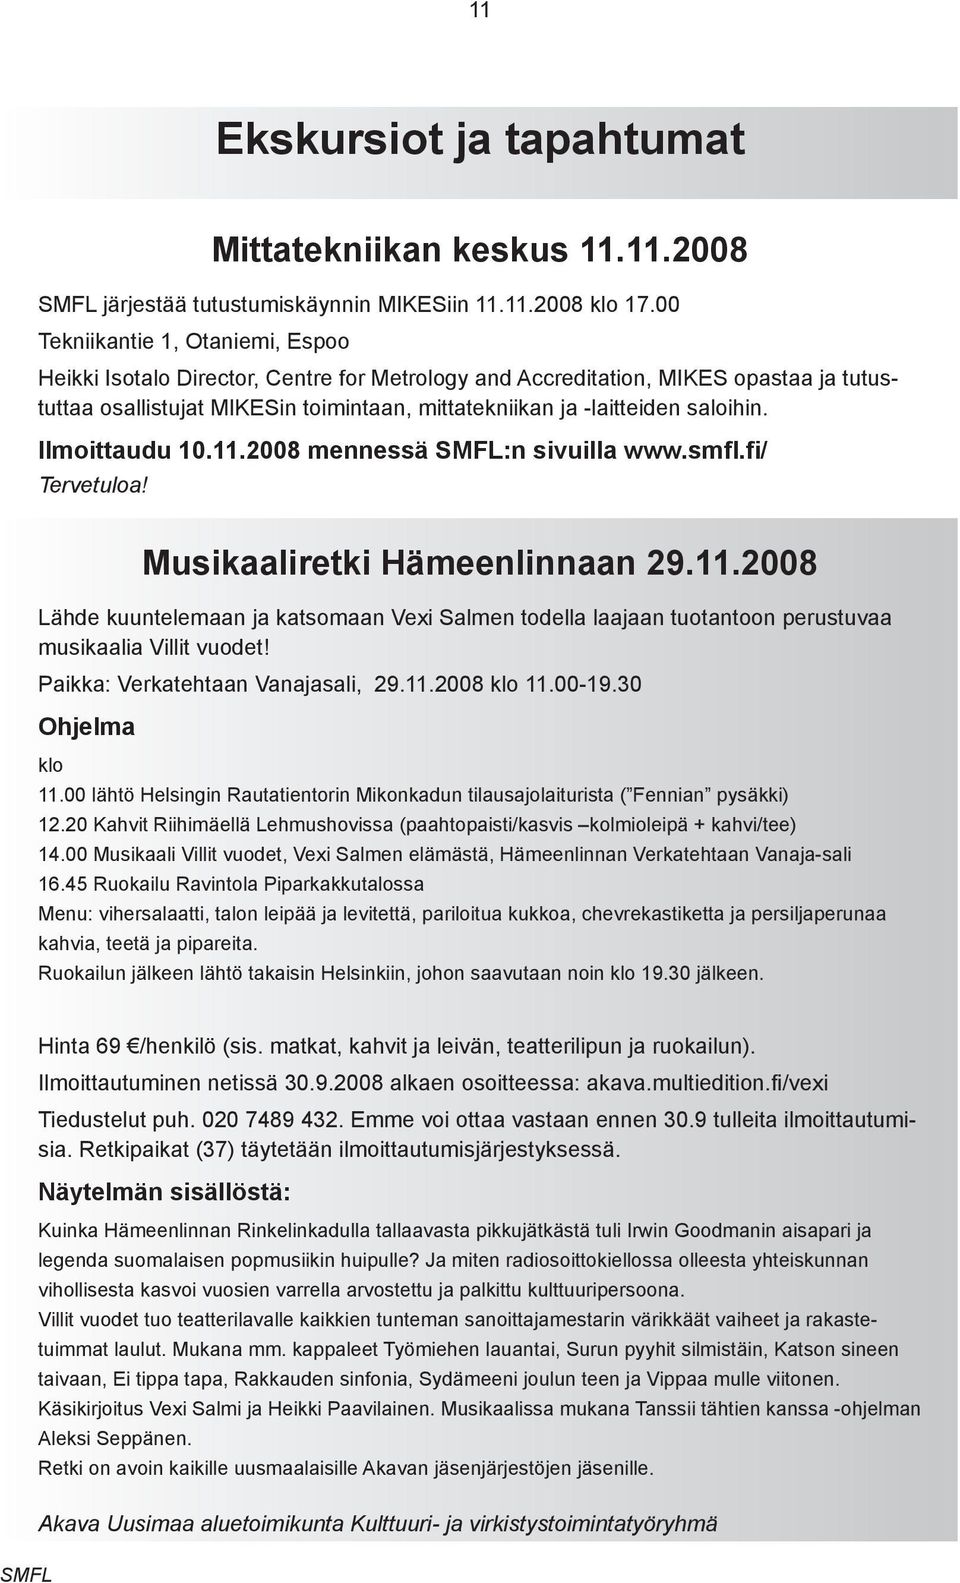 saloihin. Ilmoittaudu 10.11.2008 mennessä :n sivuilla www.smfl.fi/ Tervetuloa! Musikaaliretki Hämeenlinnaan 29.11.2008 Lähde kuuntelemaan ja katsomaan Vexi Salmen todella laajaan tuotantoon perustuvaa musikaalia Villit vuodet!